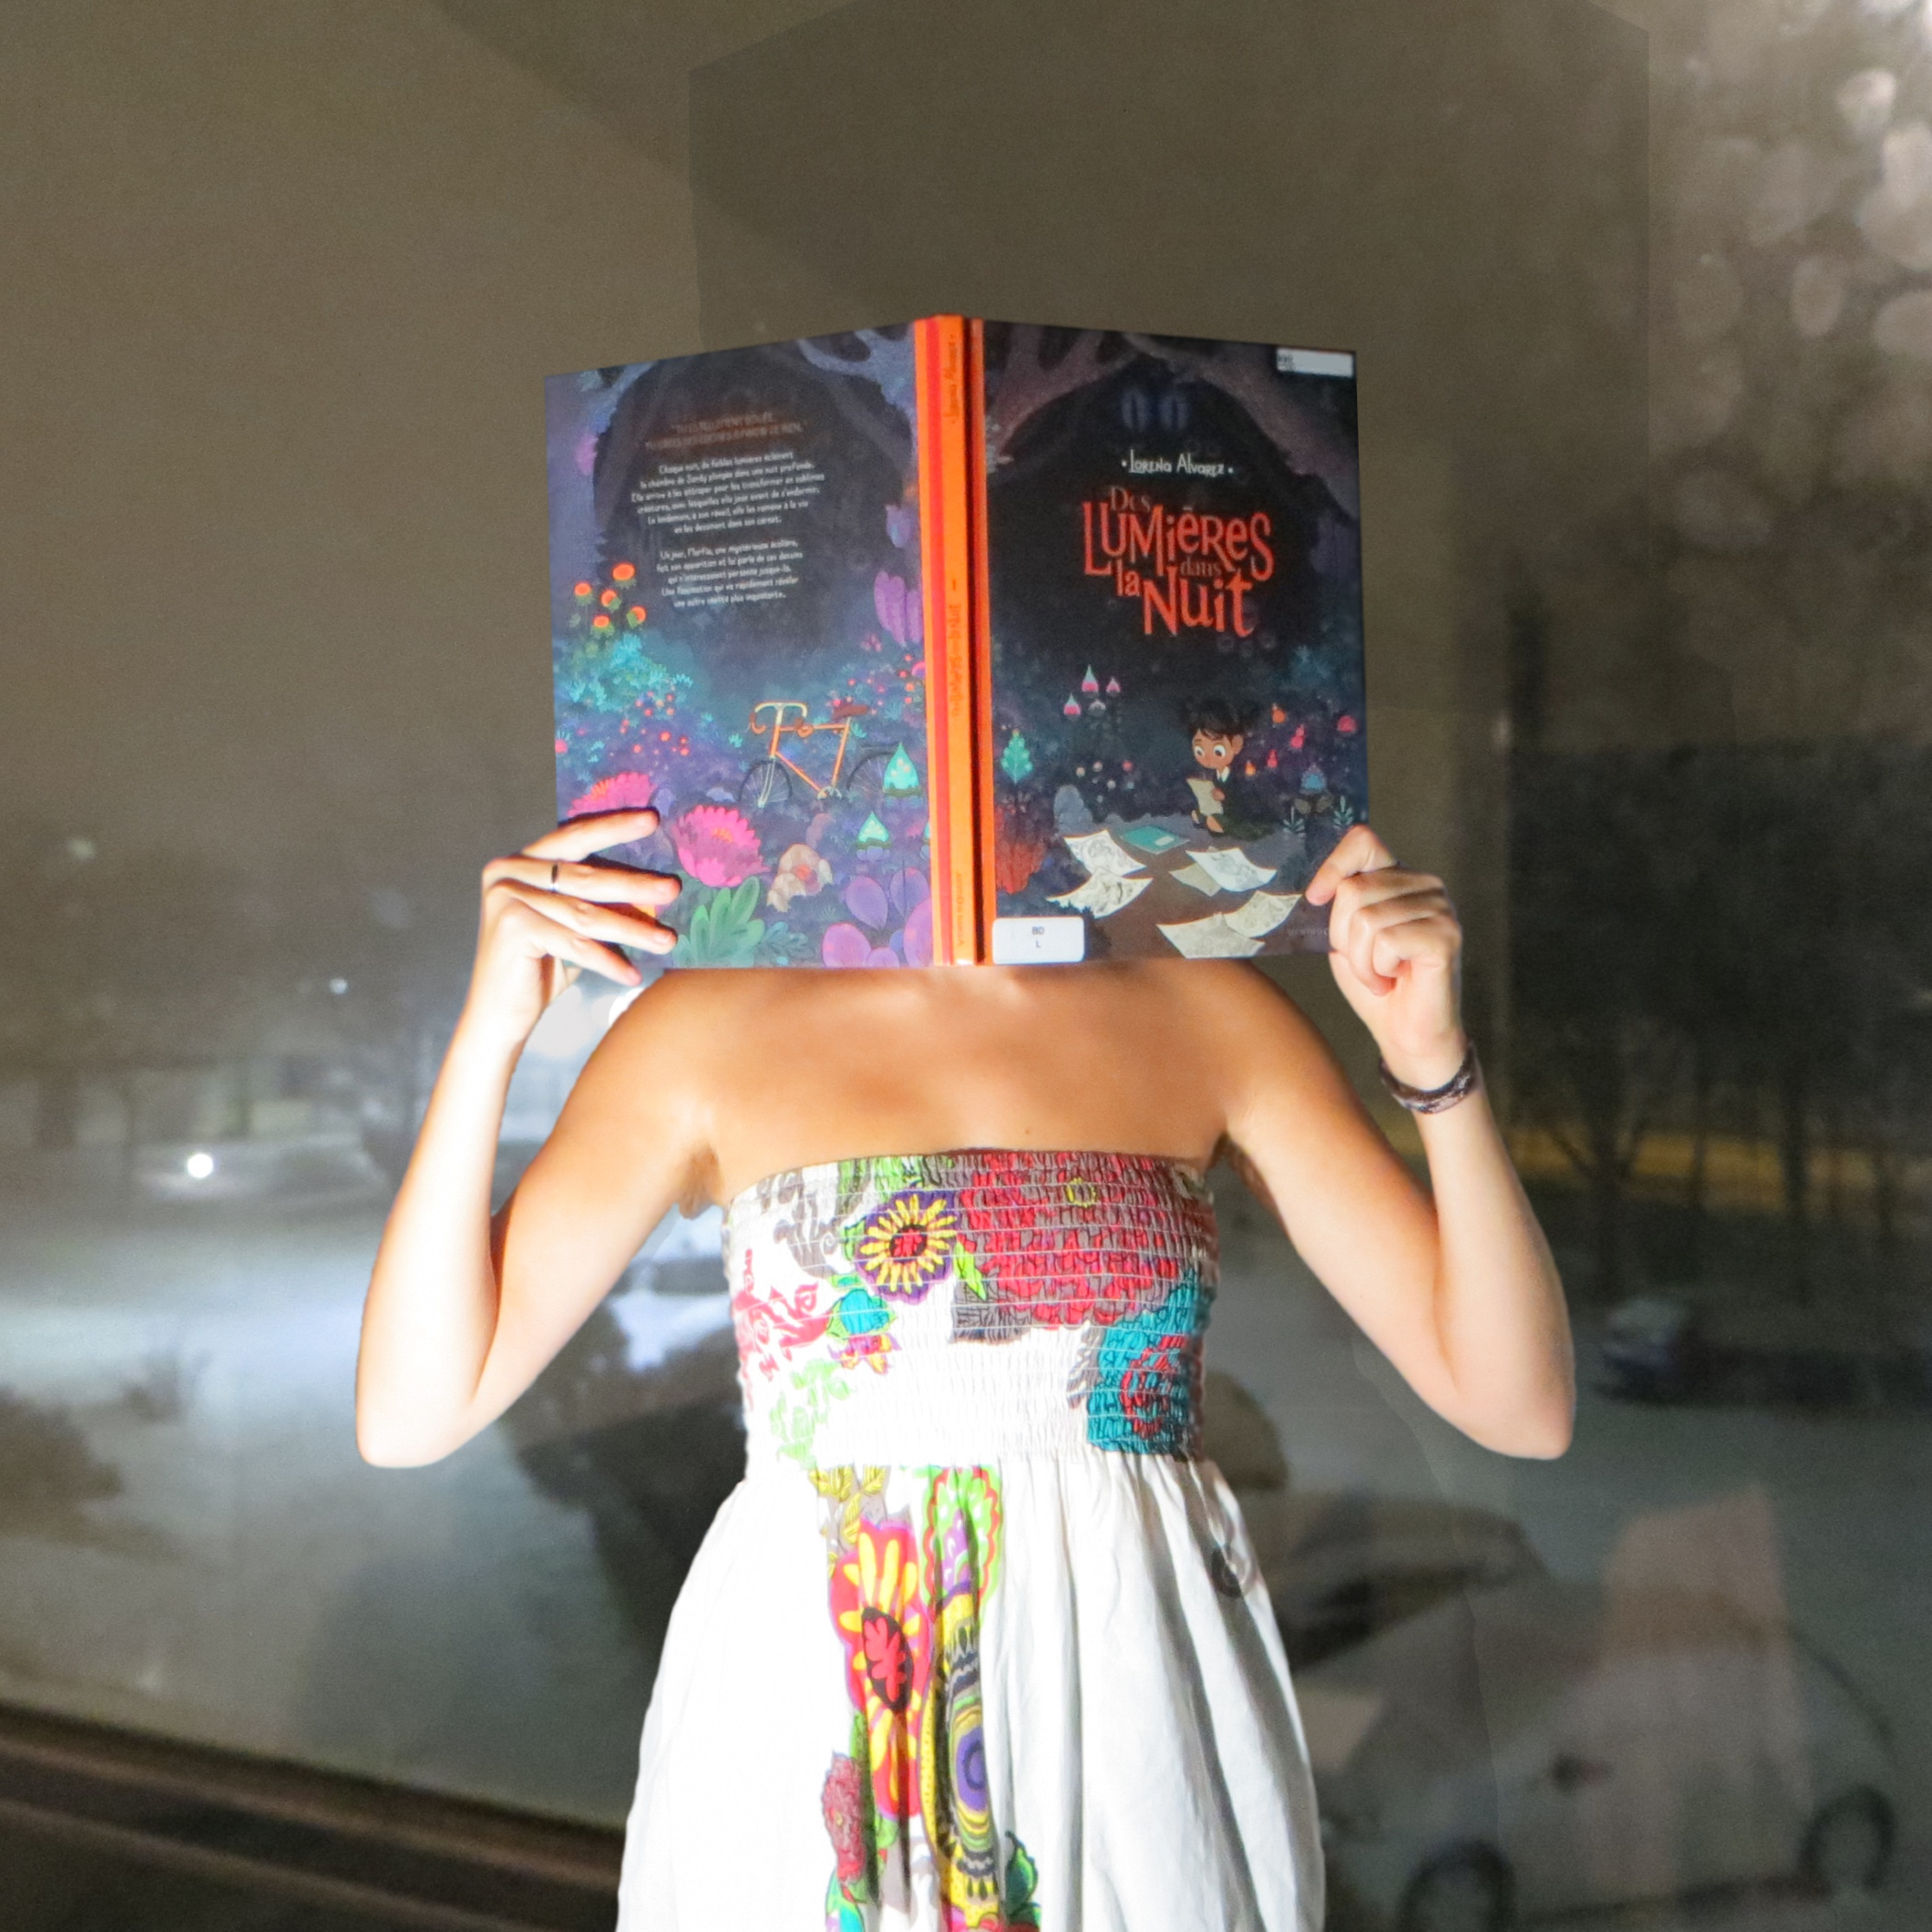 personne en sarouel blanc aux motifs colorés et abstraits lisant Des Lumières dans la nuit de Lorena Álvarez devant une fenêtre donnant sur un parking enneigé